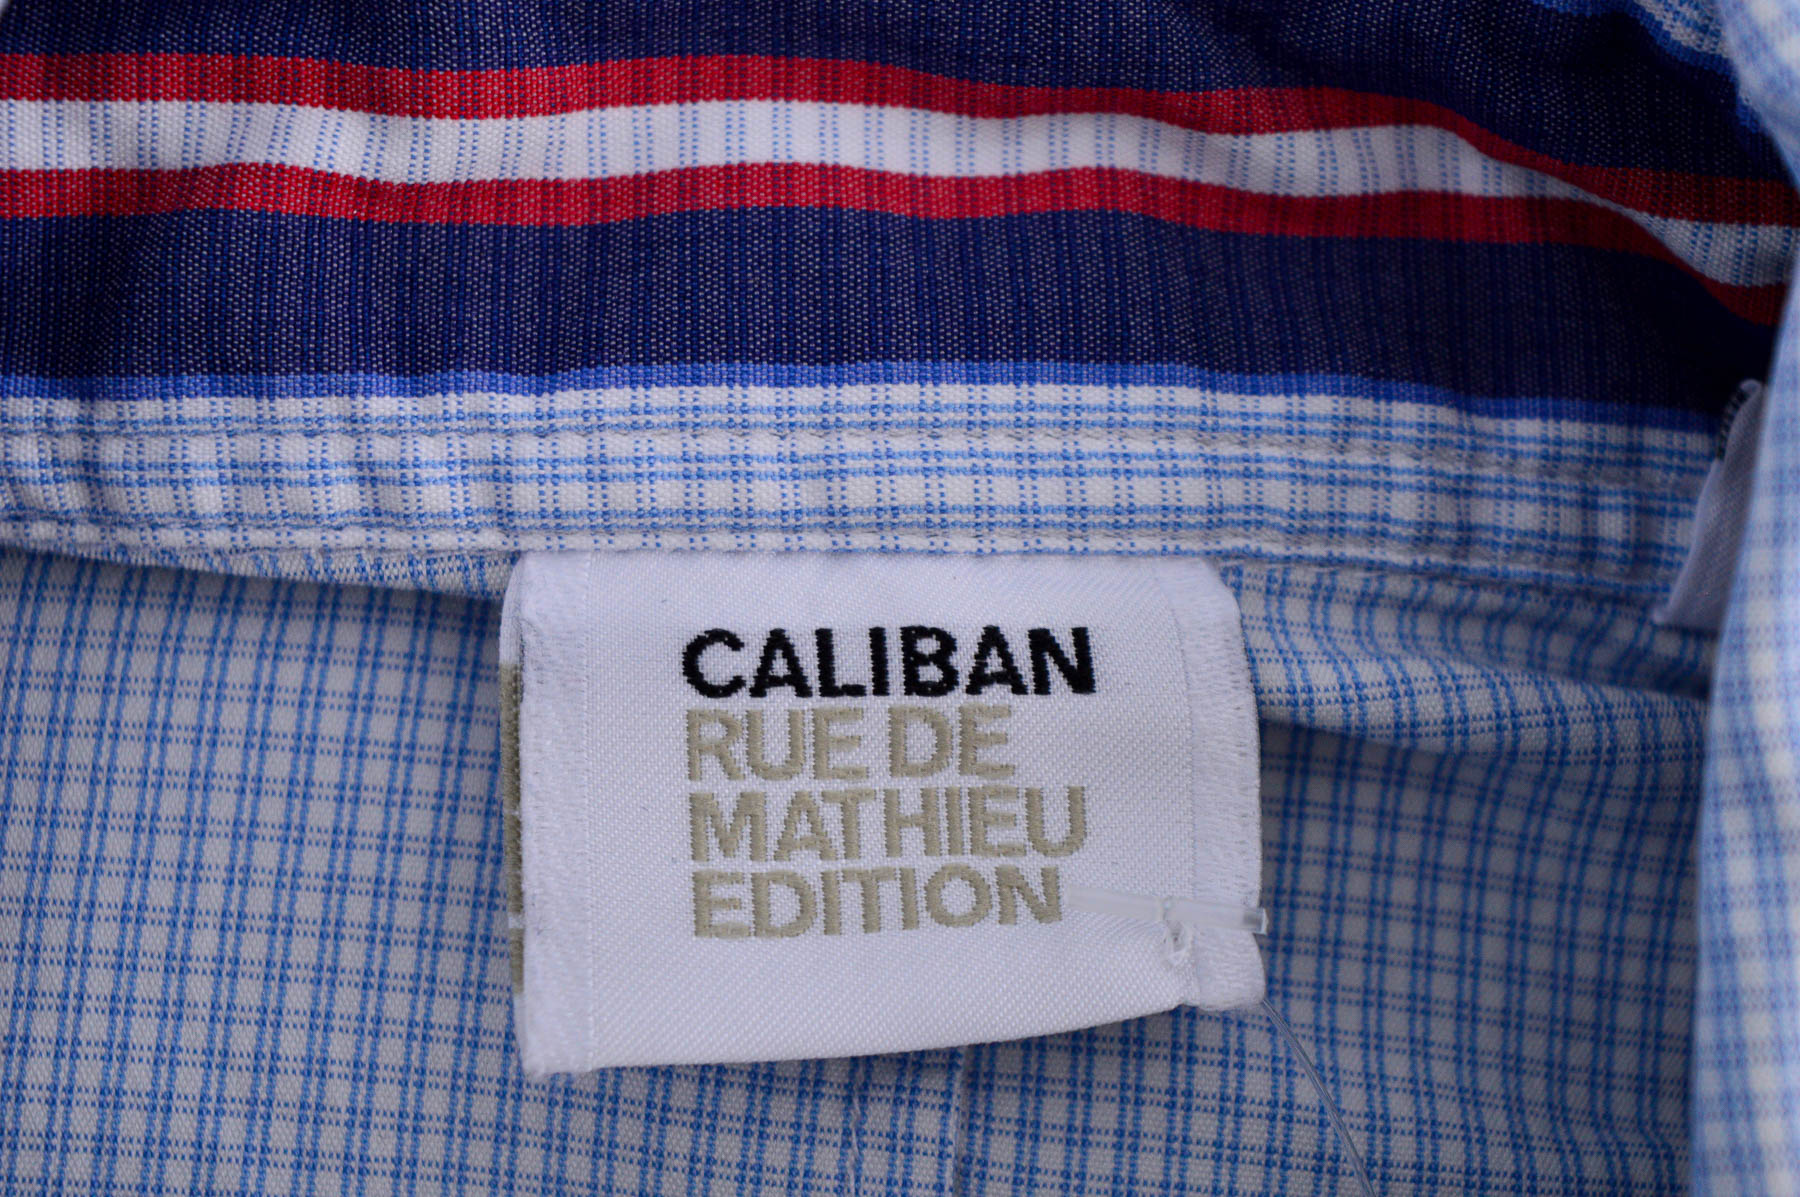 Γυναικείο πουκάμισο - Caliban Rue DE Mathieu Edition - 2